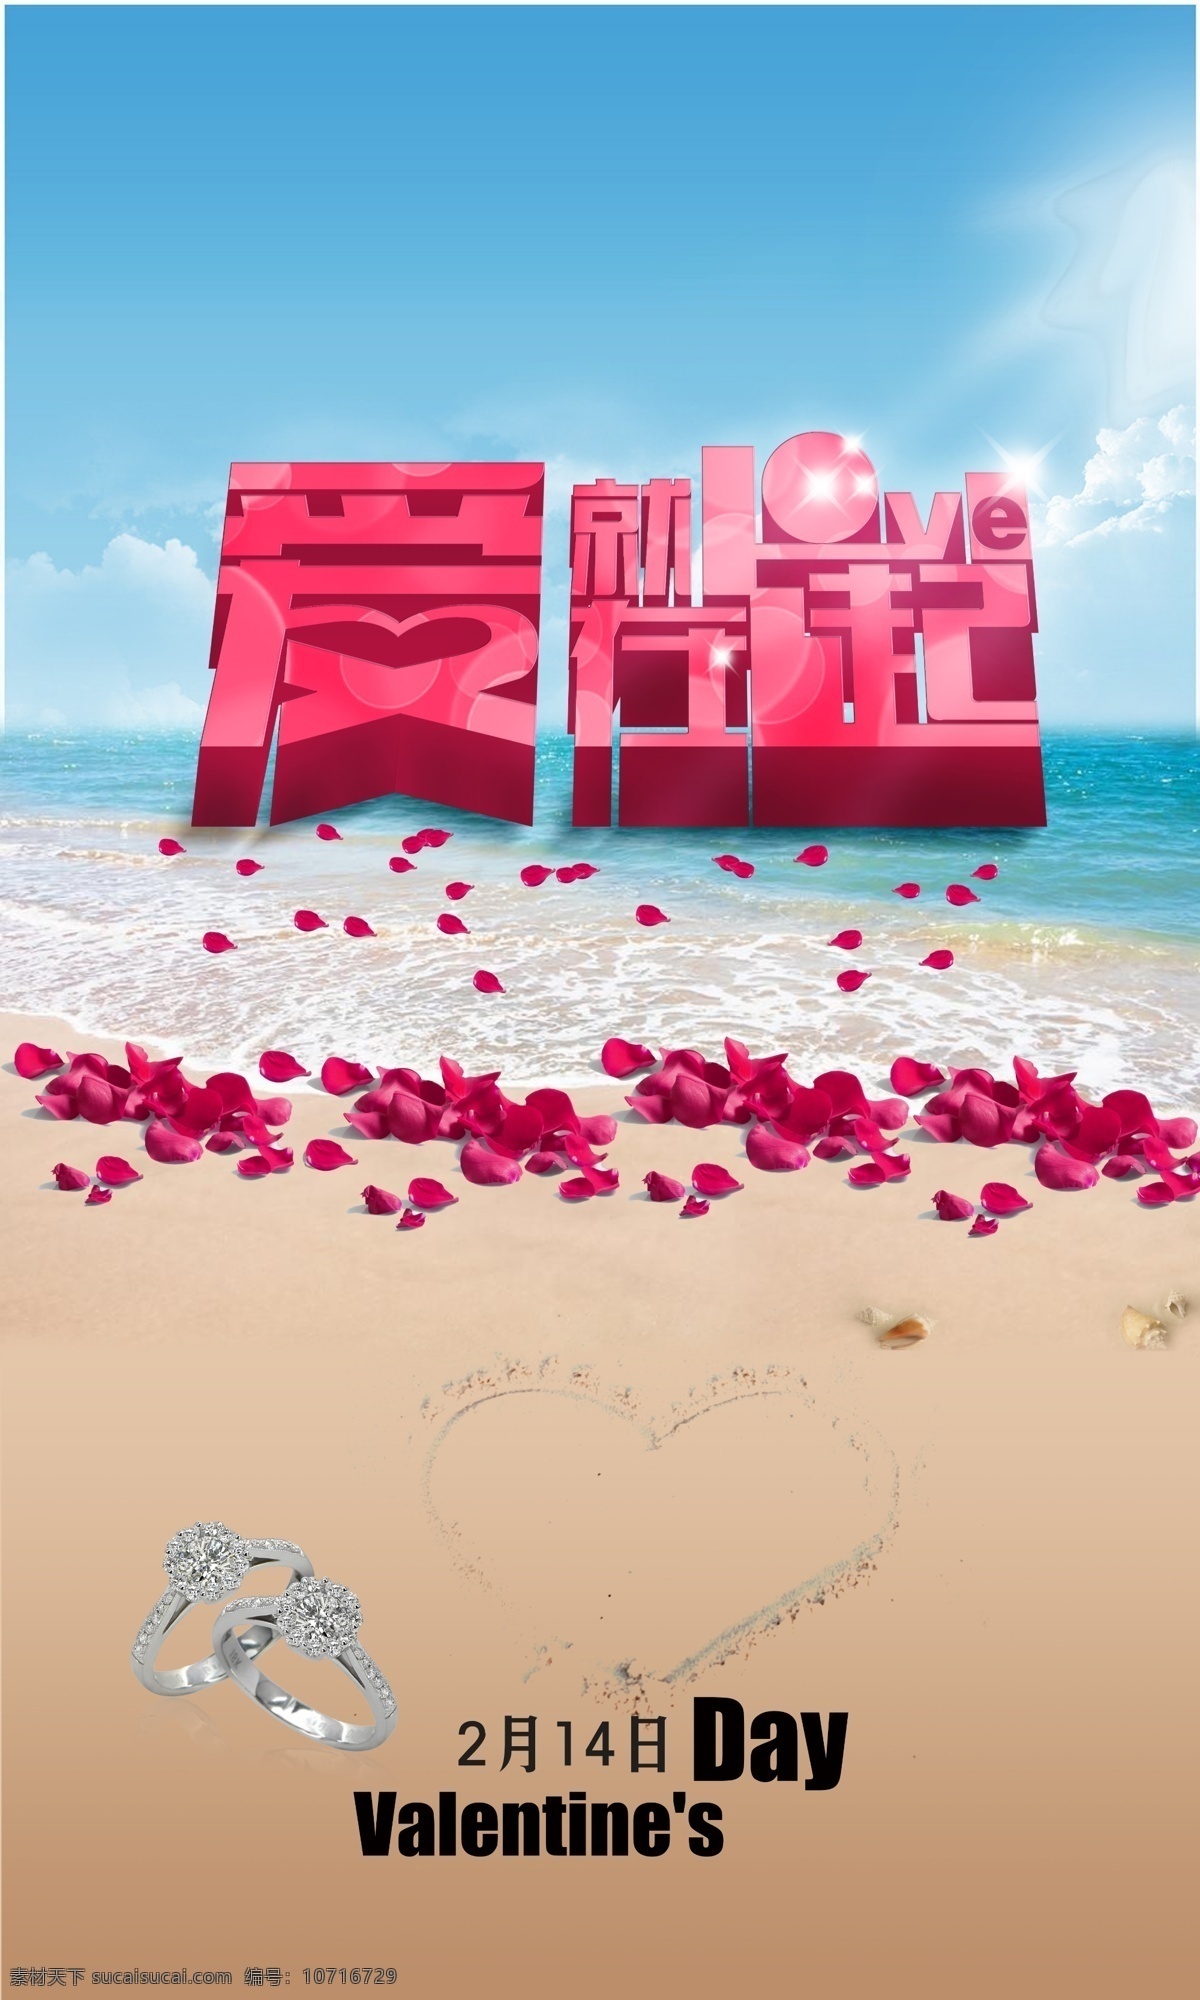 爱就在一起 2月14日 情人节海报 爱情玫瑰 戒指 海景沙滩 心形 情人节艺术字